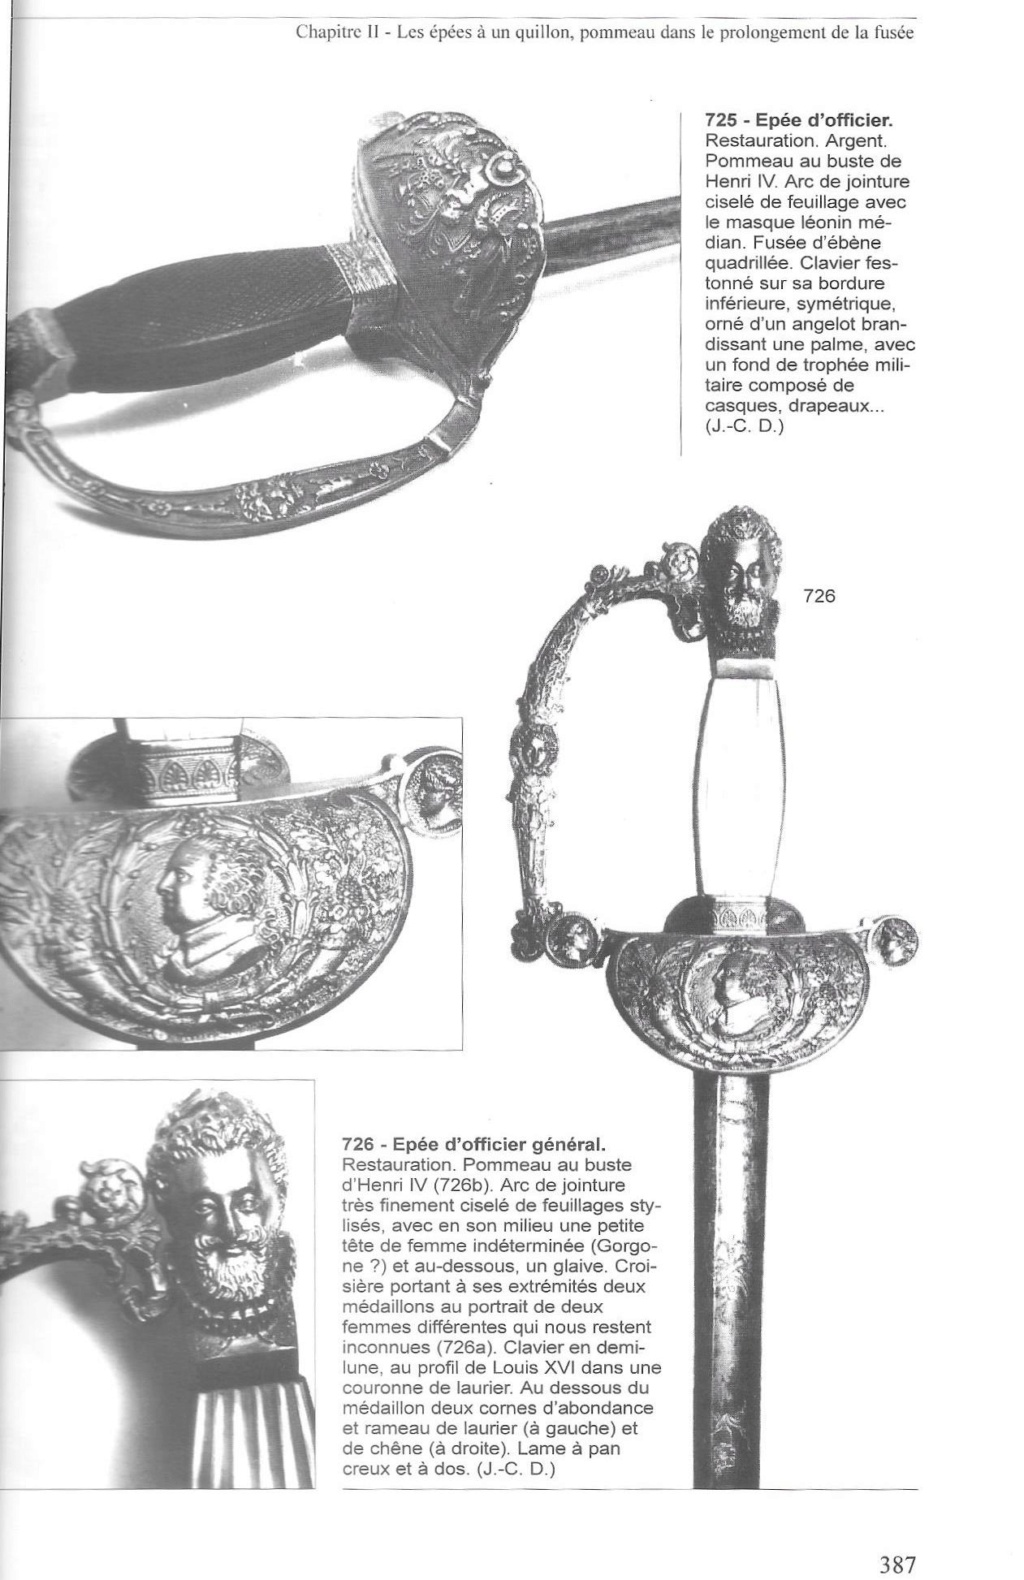 Epée de d'officier général restauration au buste de Henri IV Scan10